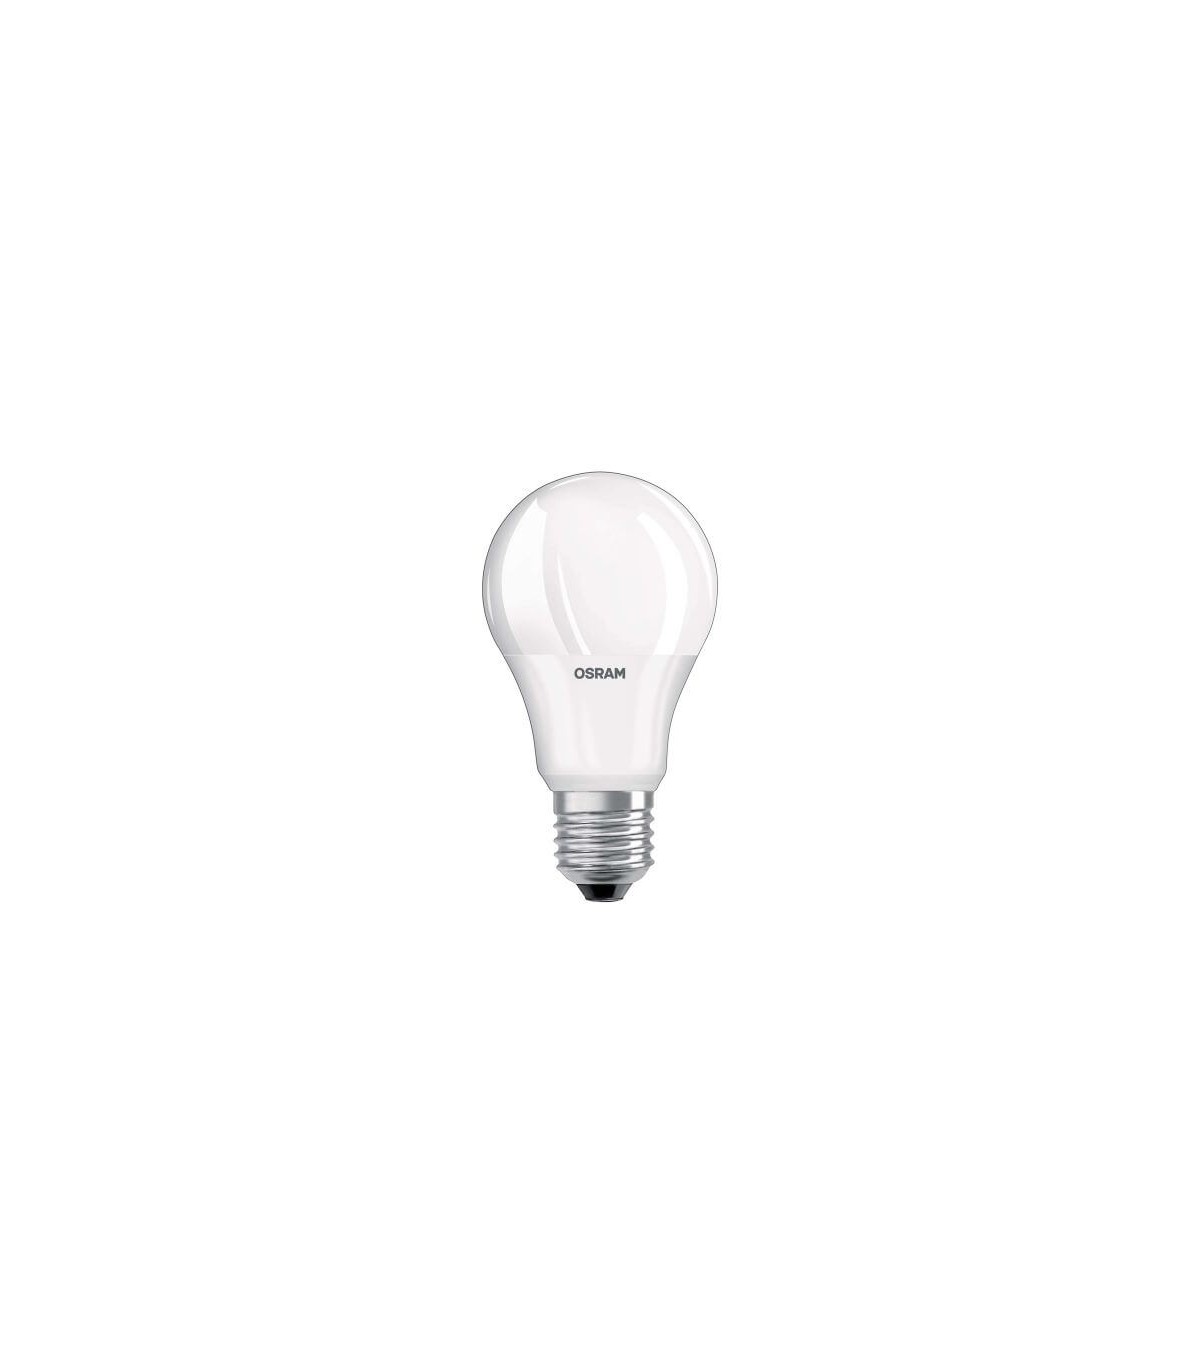 Ampoule LED LED 120w E27 Blanc Chaud Non Dimmable, Verre - Ampoule BUT